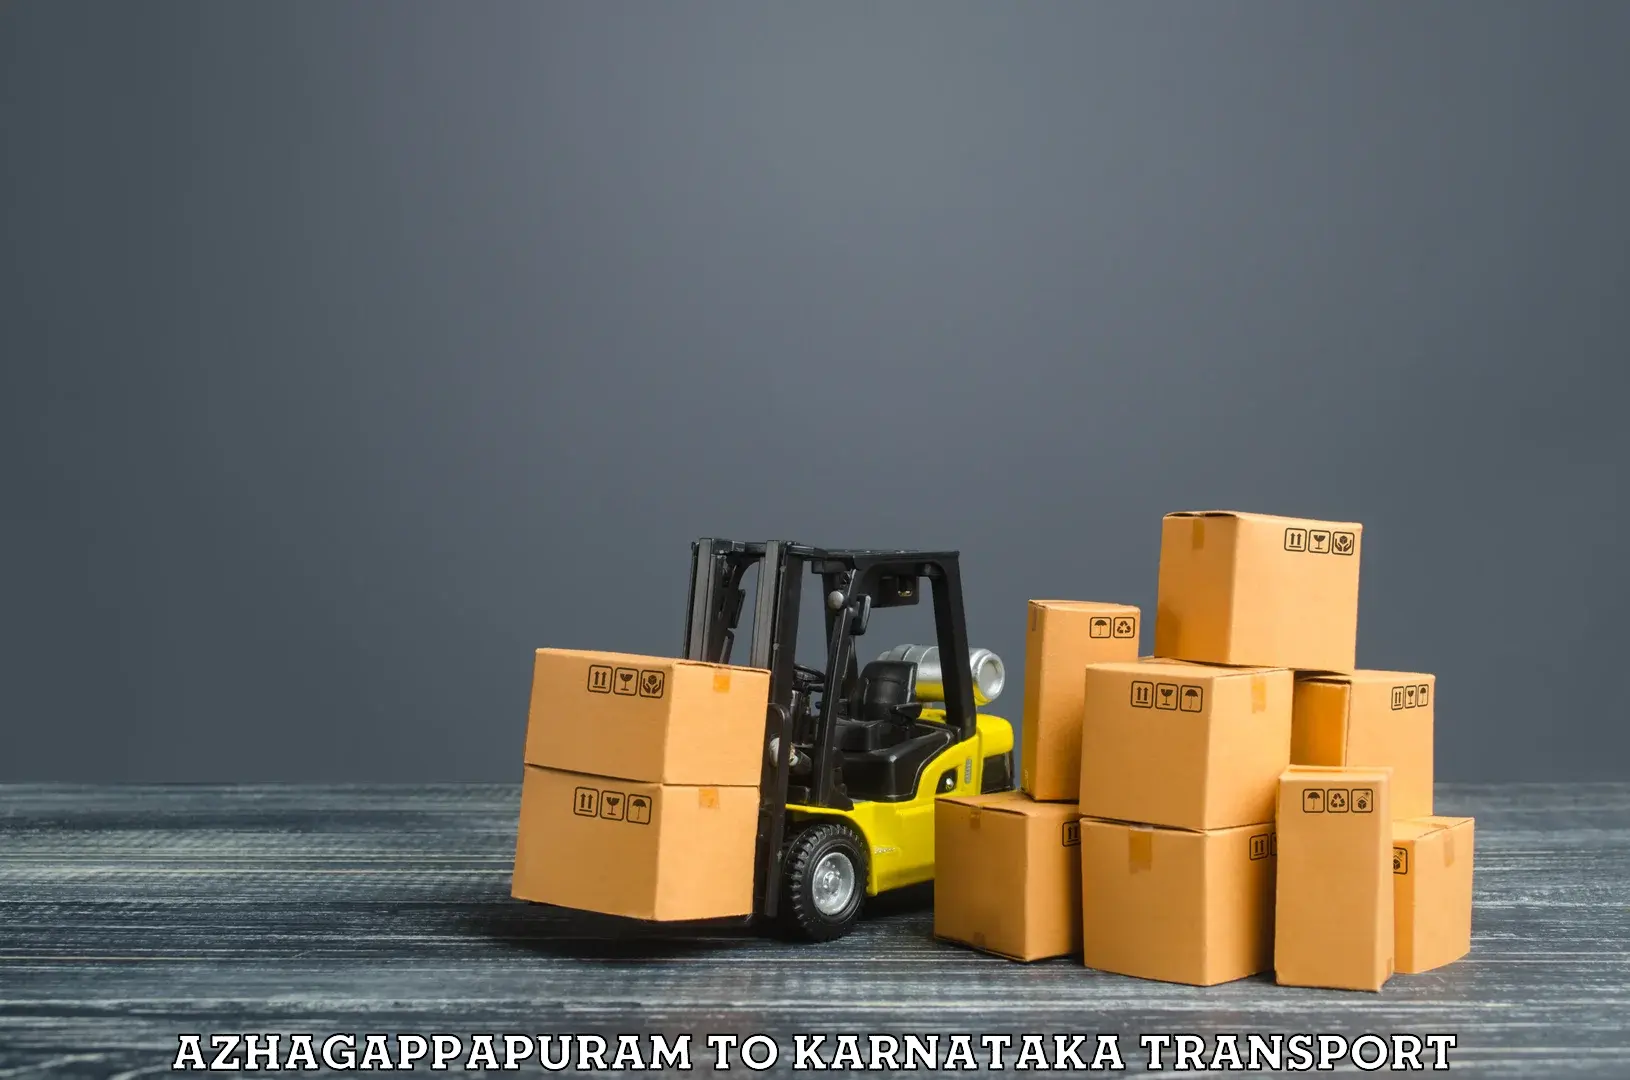 Truck transport companies in India Azhagappapuram to Kumta